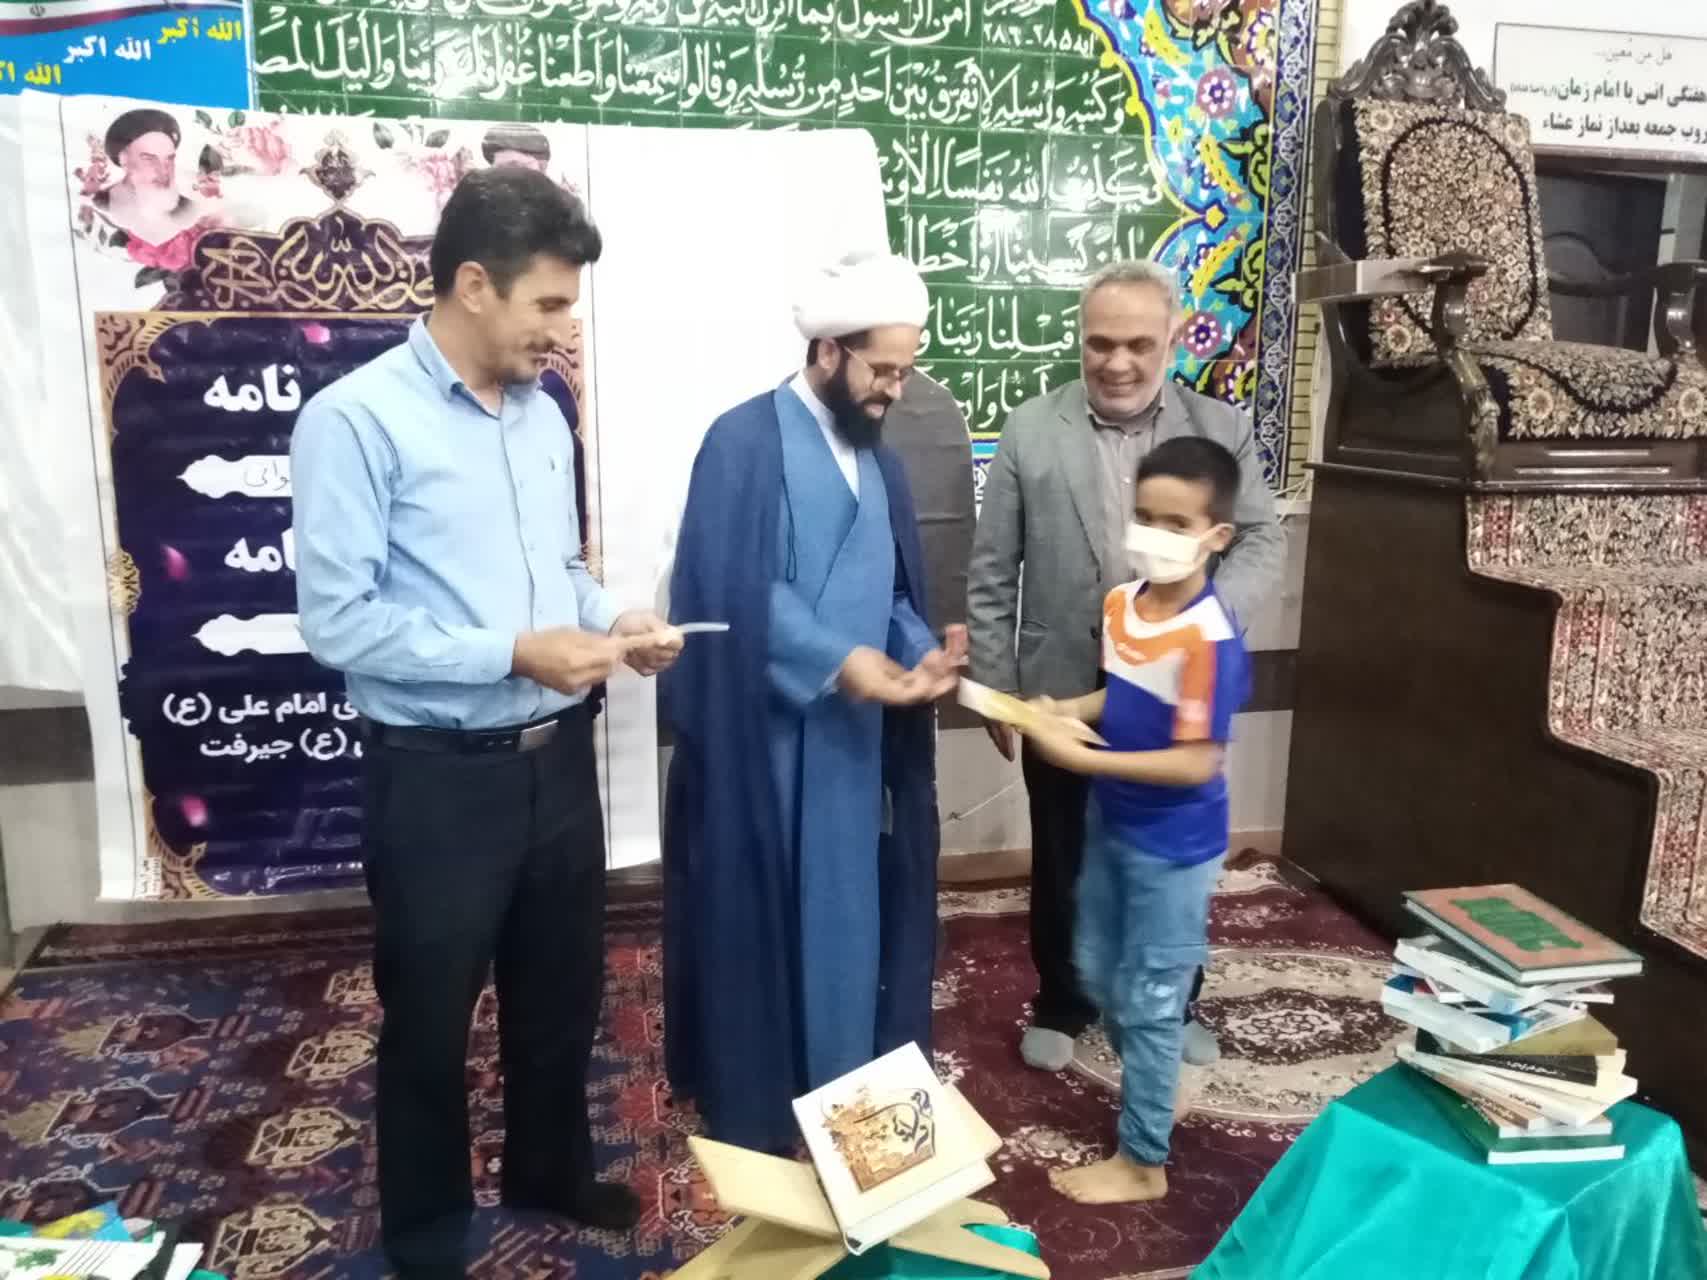 بچه مسجدی های کانون امام علی (ع) کتاب هدیه دادند